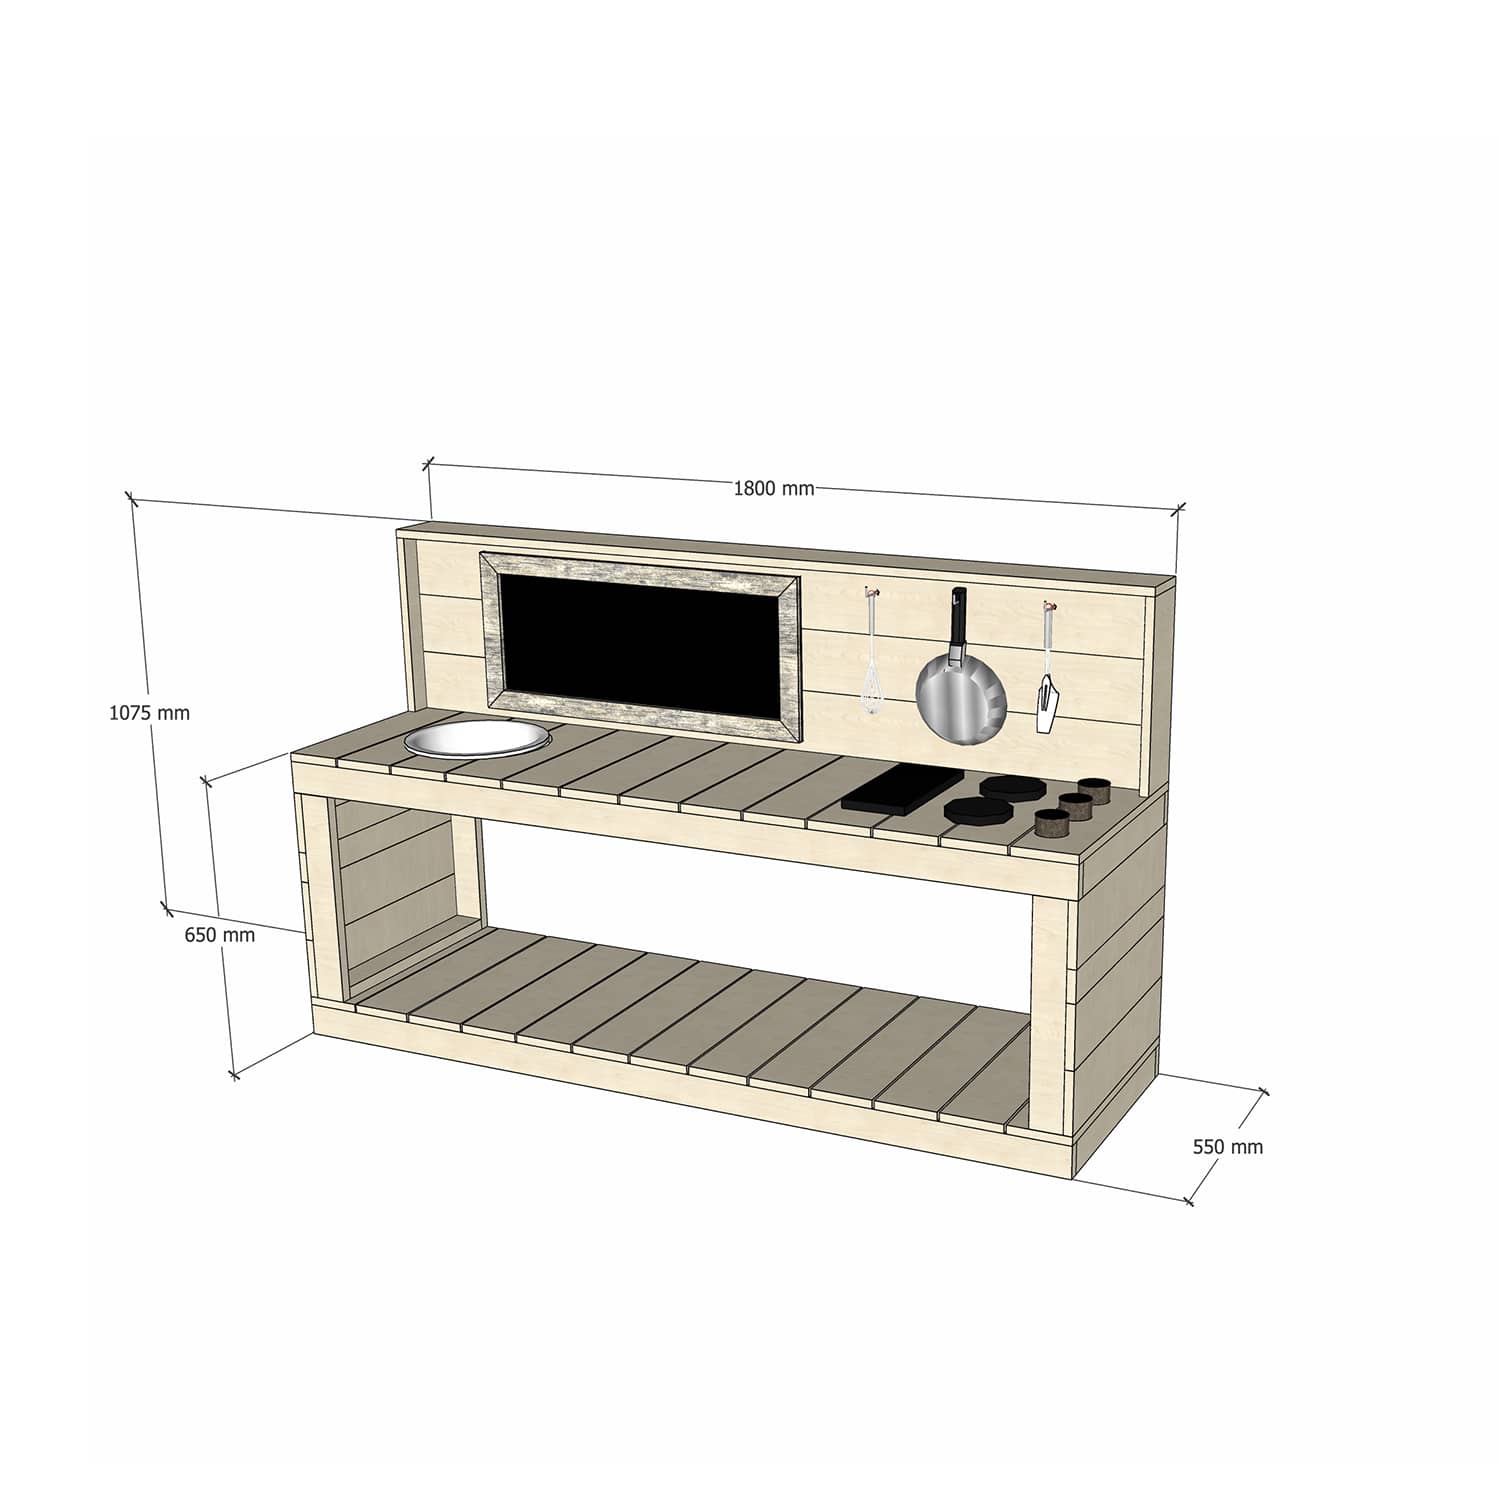 Medium Raw Pine Timber Play Kitchen 650 Bench Sink Stovetop